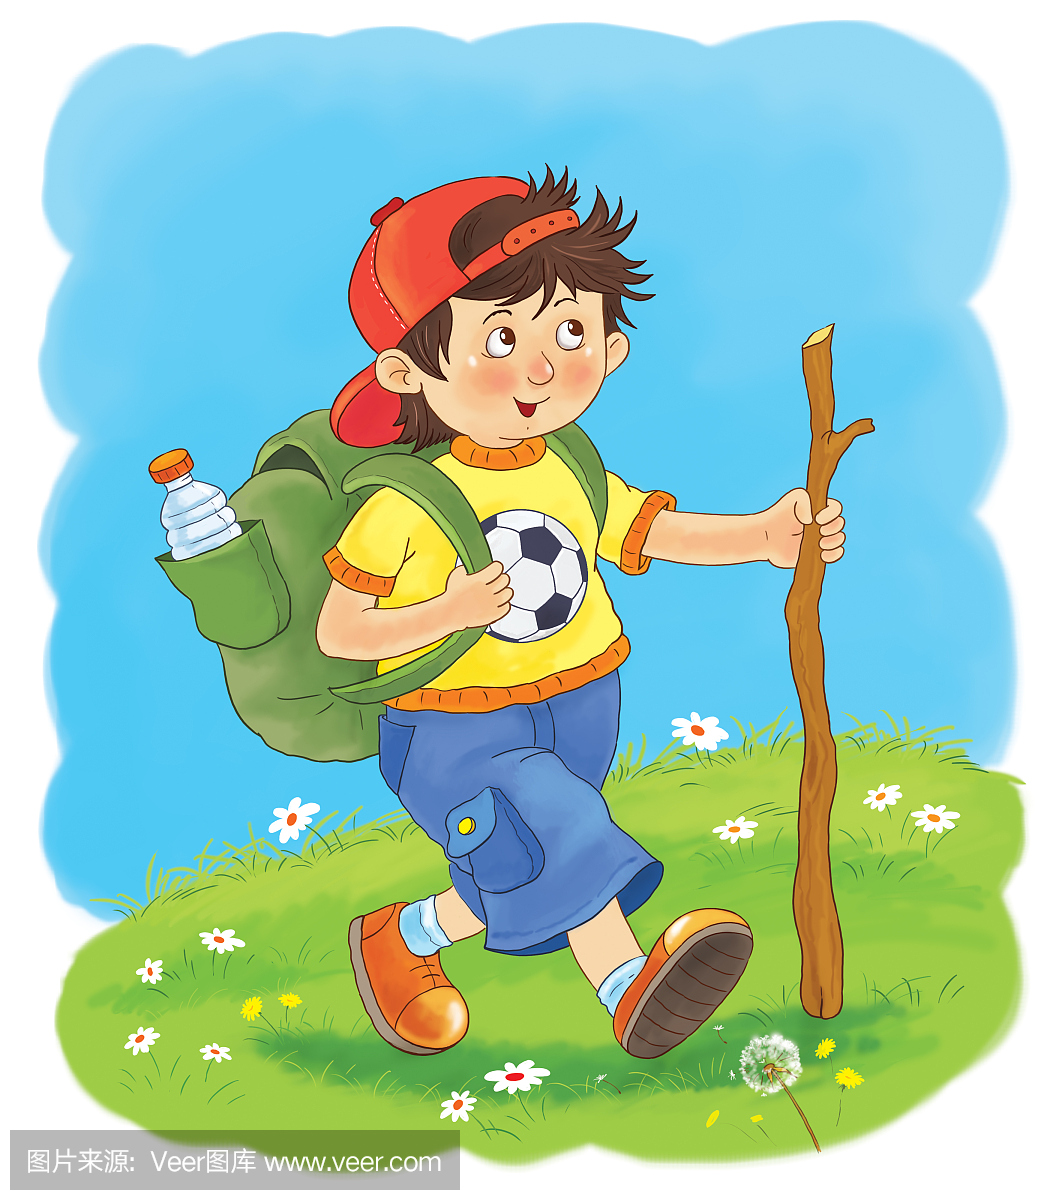 一个快乐可爱的男孩爬山徒步旅行。插图为孩子